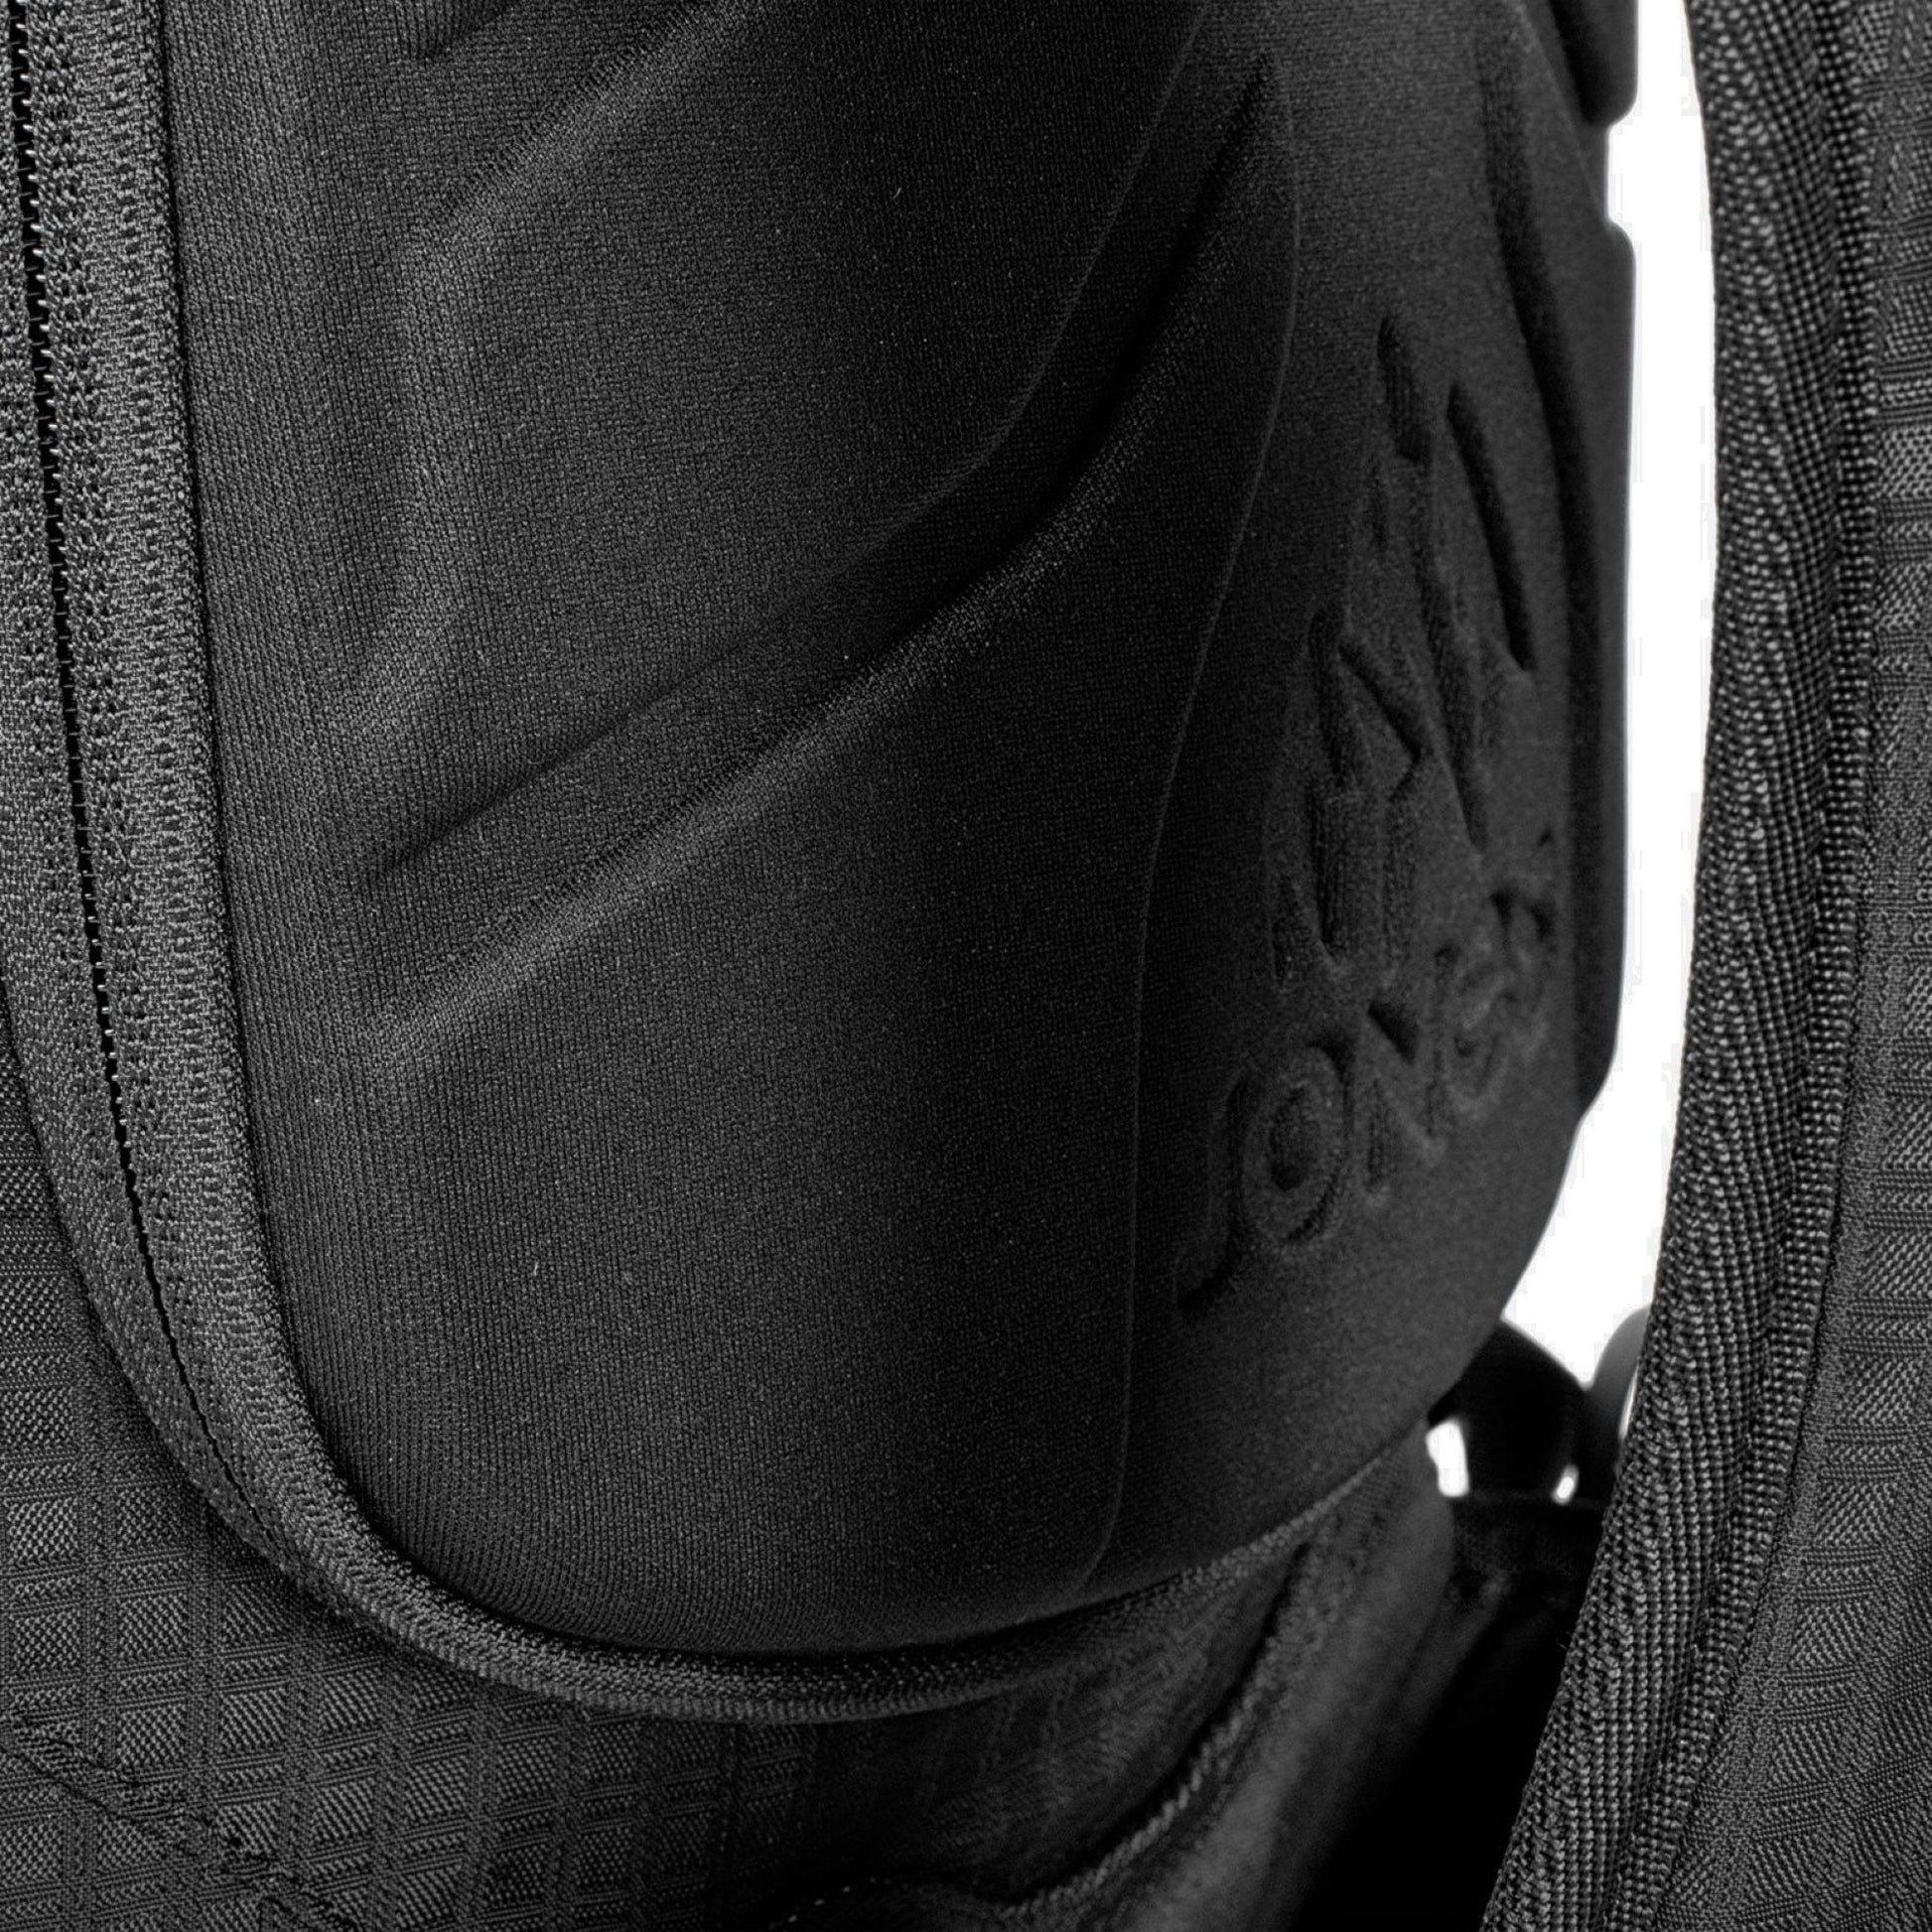 Jones Dscnt R.A.S 32L Backpack Black OS Backpacks